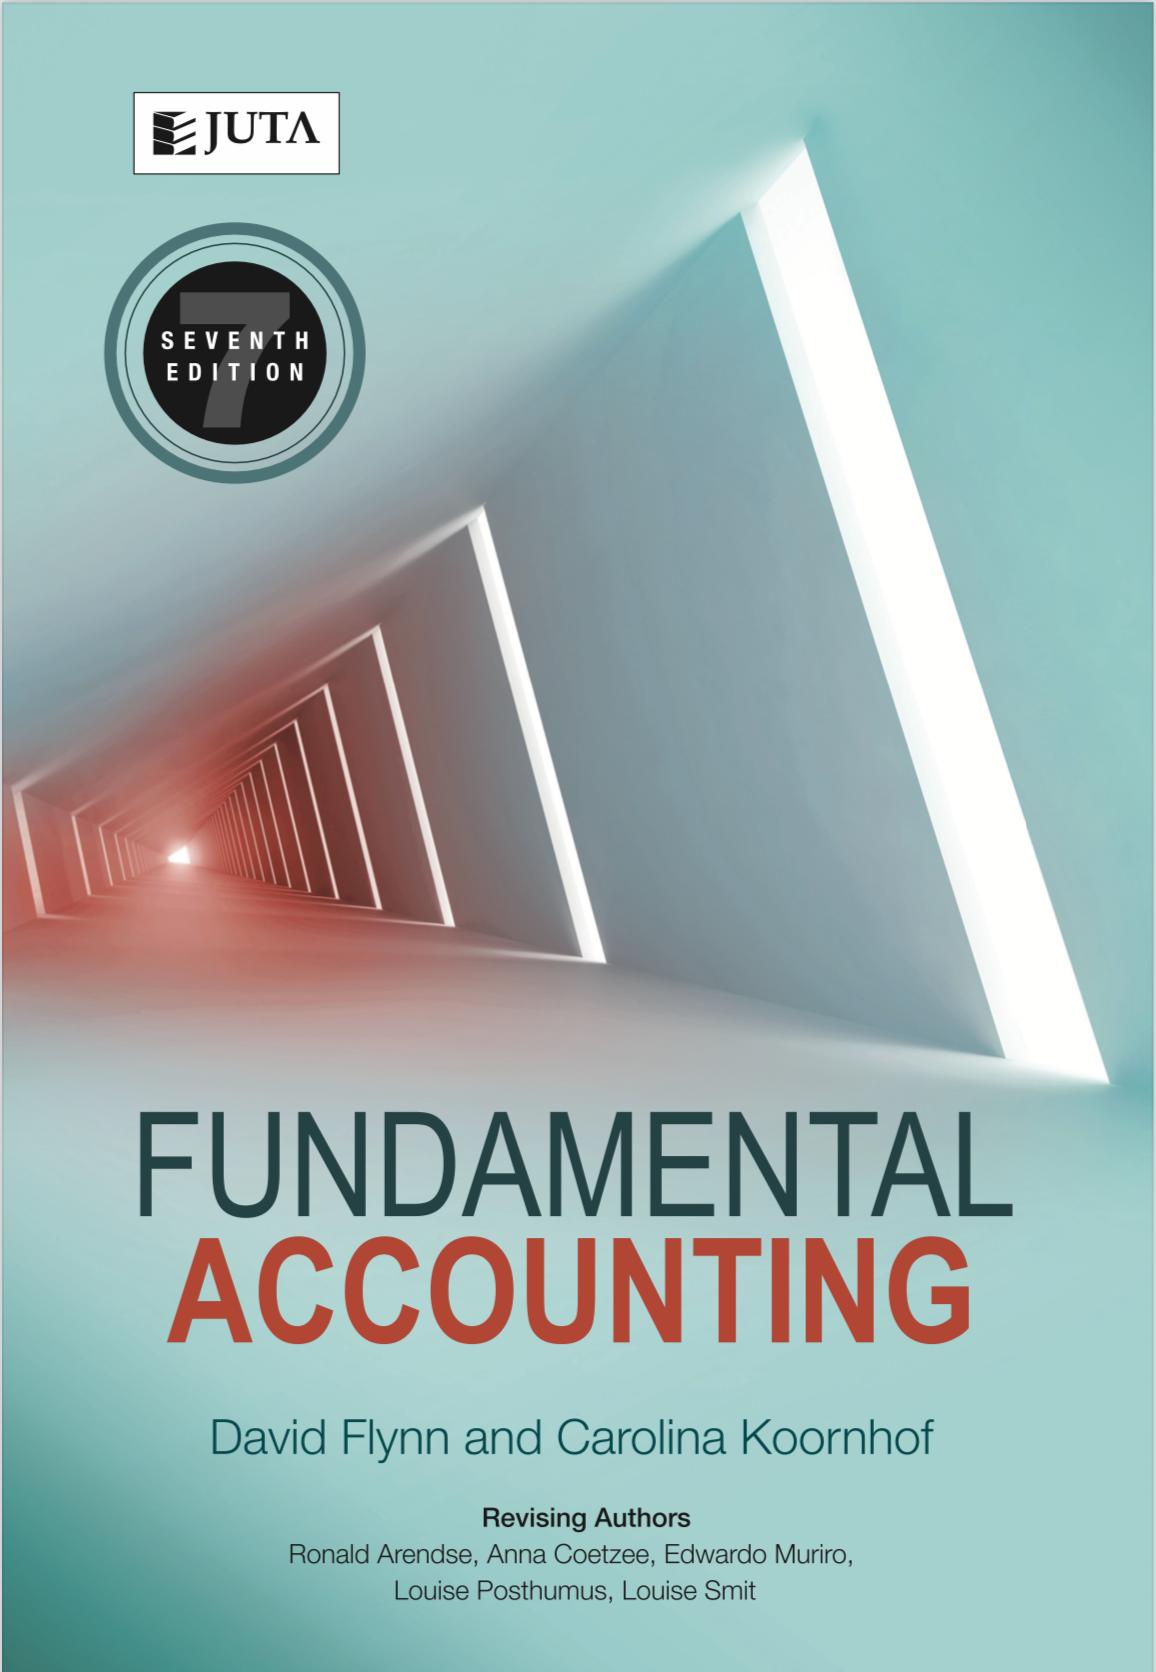 Fundamental Accounting